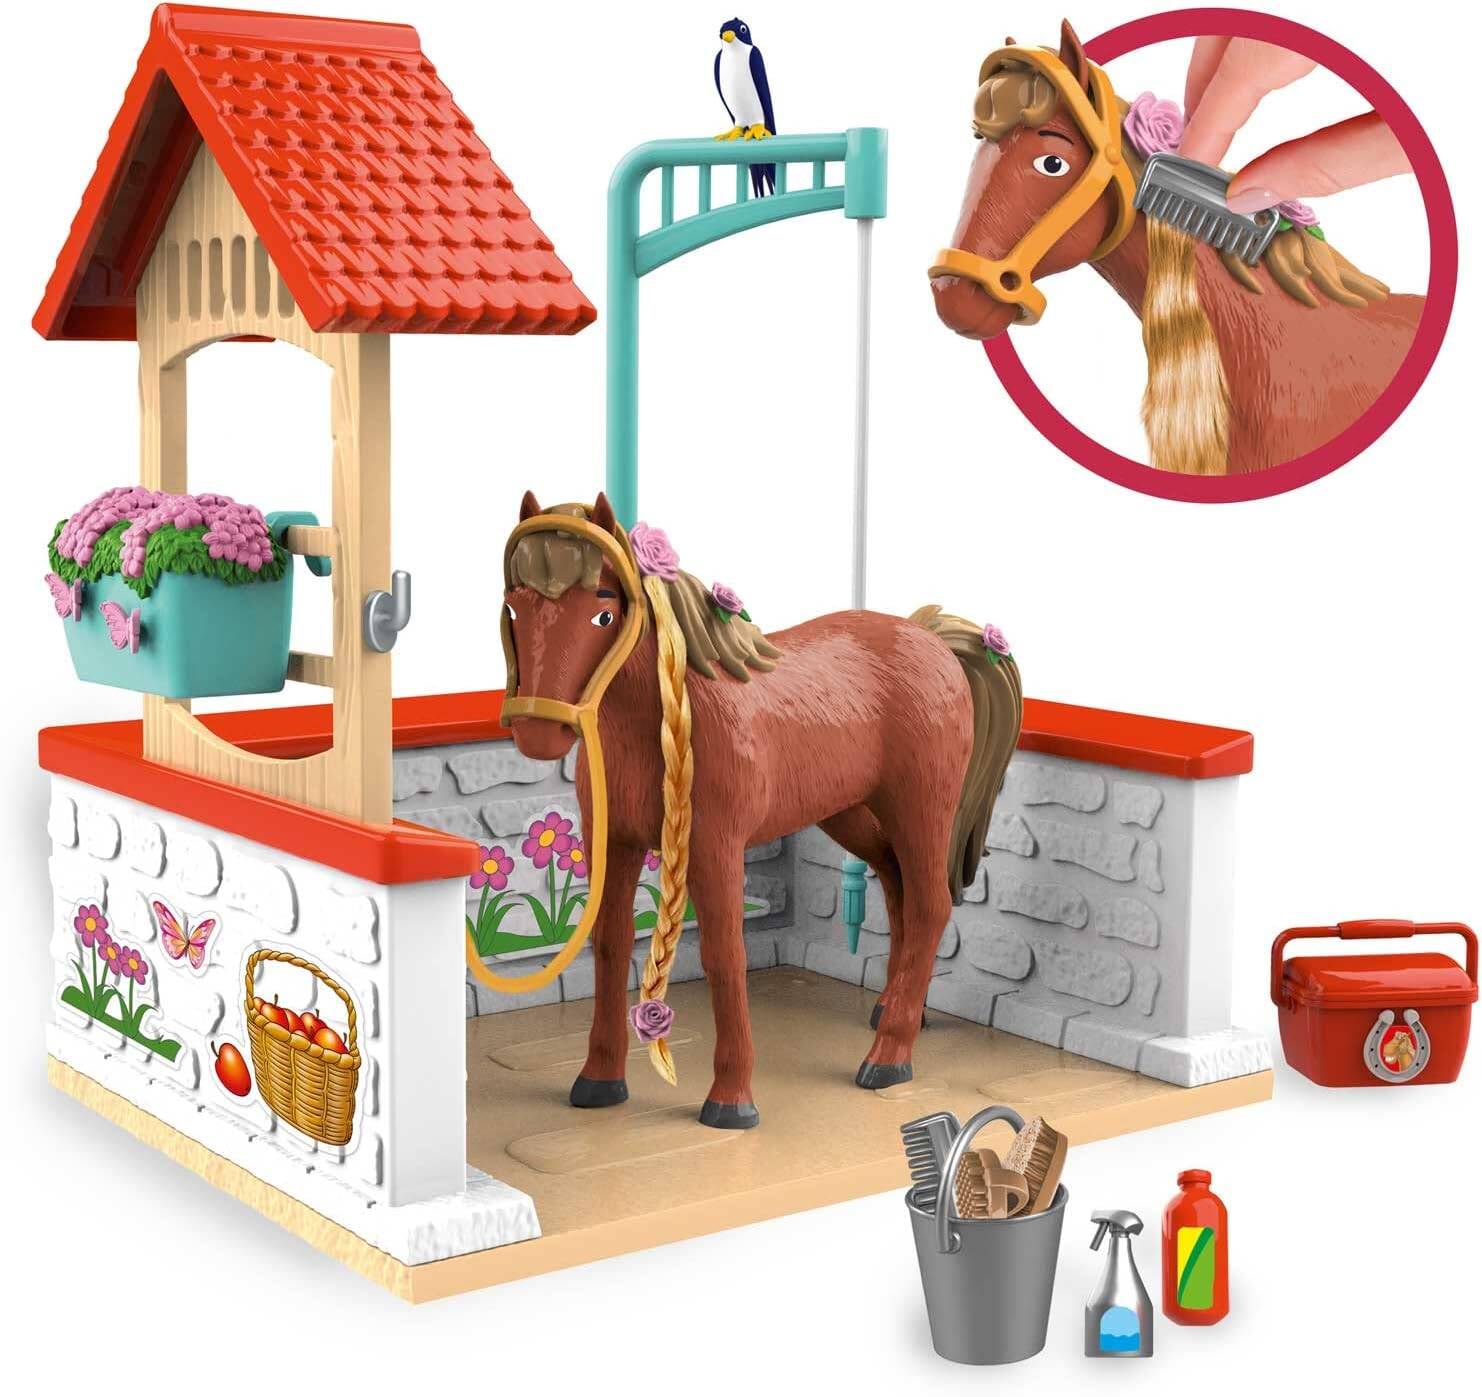 Sklep figurka BIBI - CRAZE koni STAJNIA AMADEUS + Koń myjnia AKCESORIA Tina & dla OUTLET